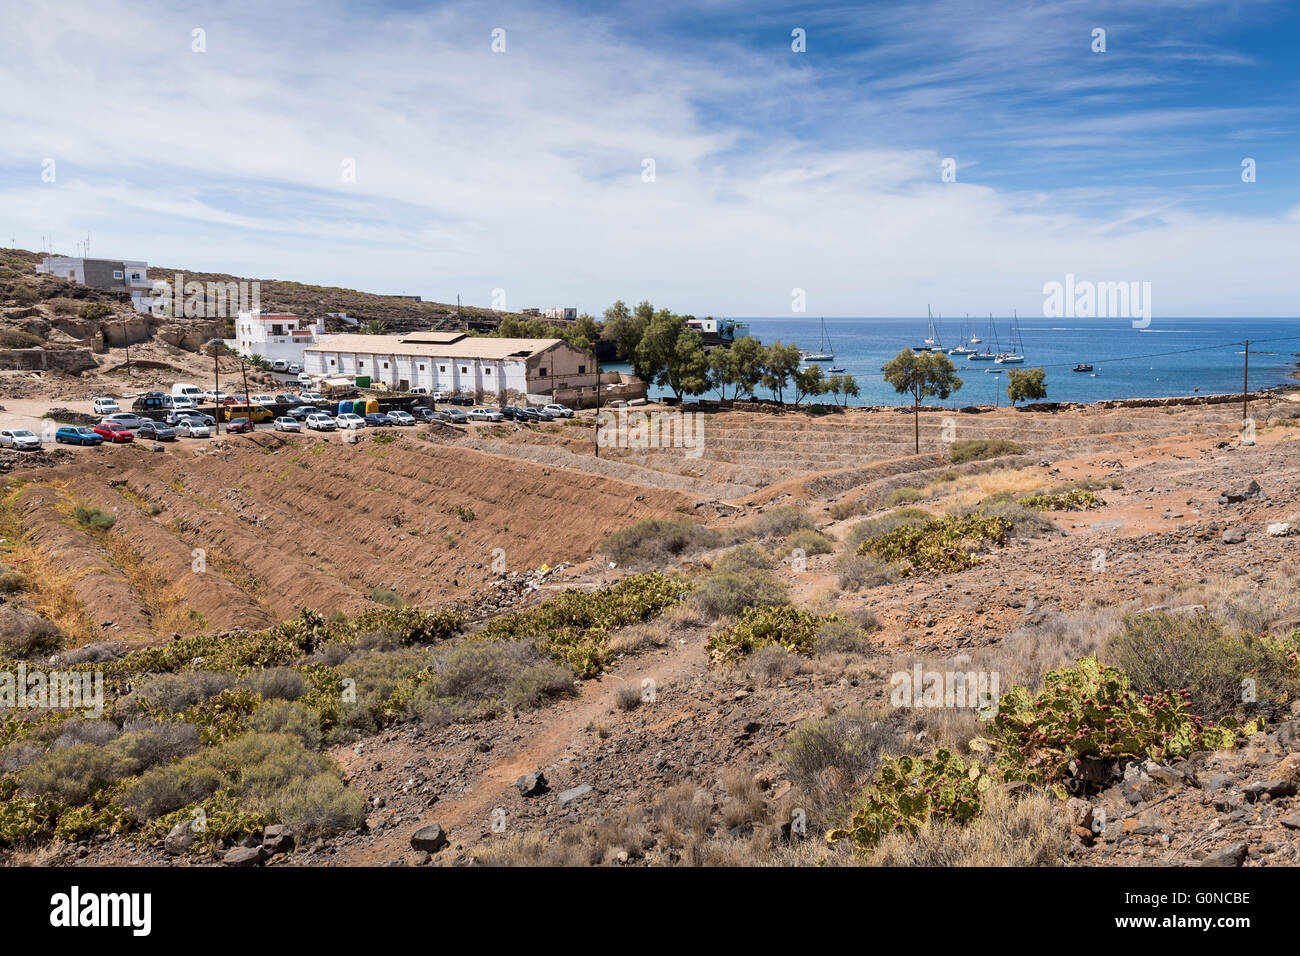 Die abgeschiedenen Hafen Dorf von El Puertito in Adeje, Teneriffa, Kanarische Inseln, Spanien. Stockfoto